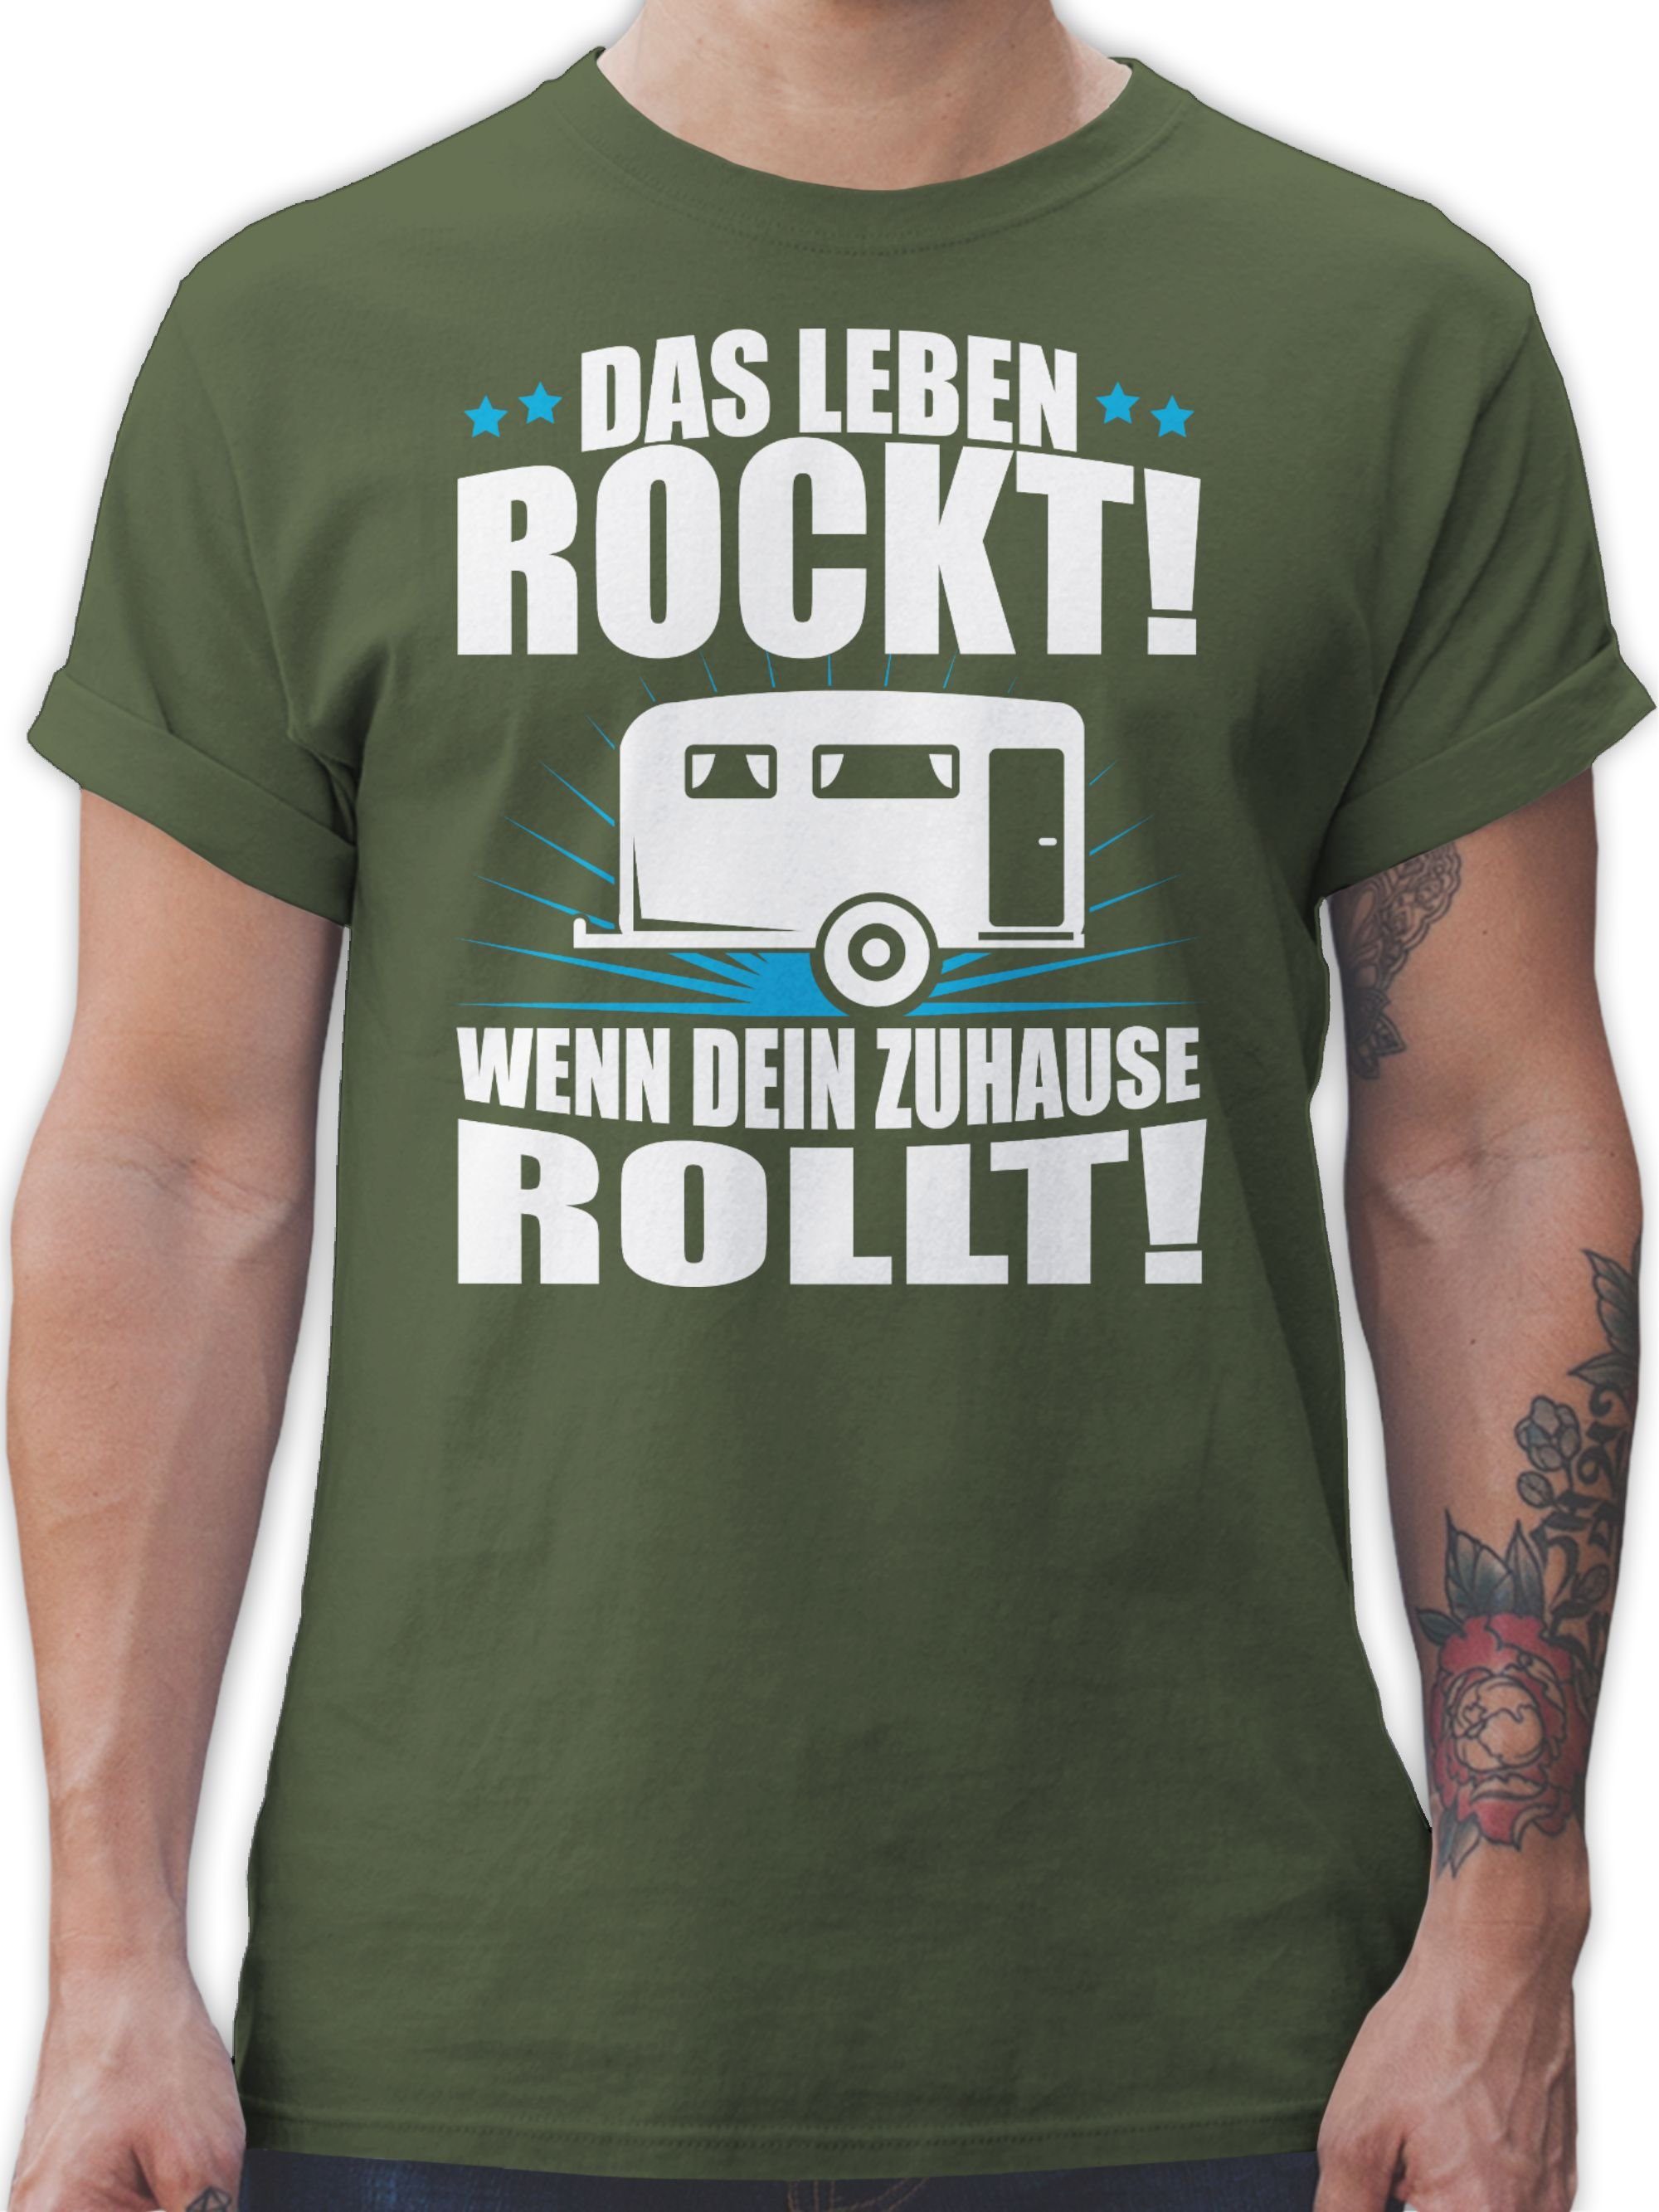 Grün Shirtracer rockt! Das Leben T-Shirt weiß Wohnwagen Army Outfit Hobby 3